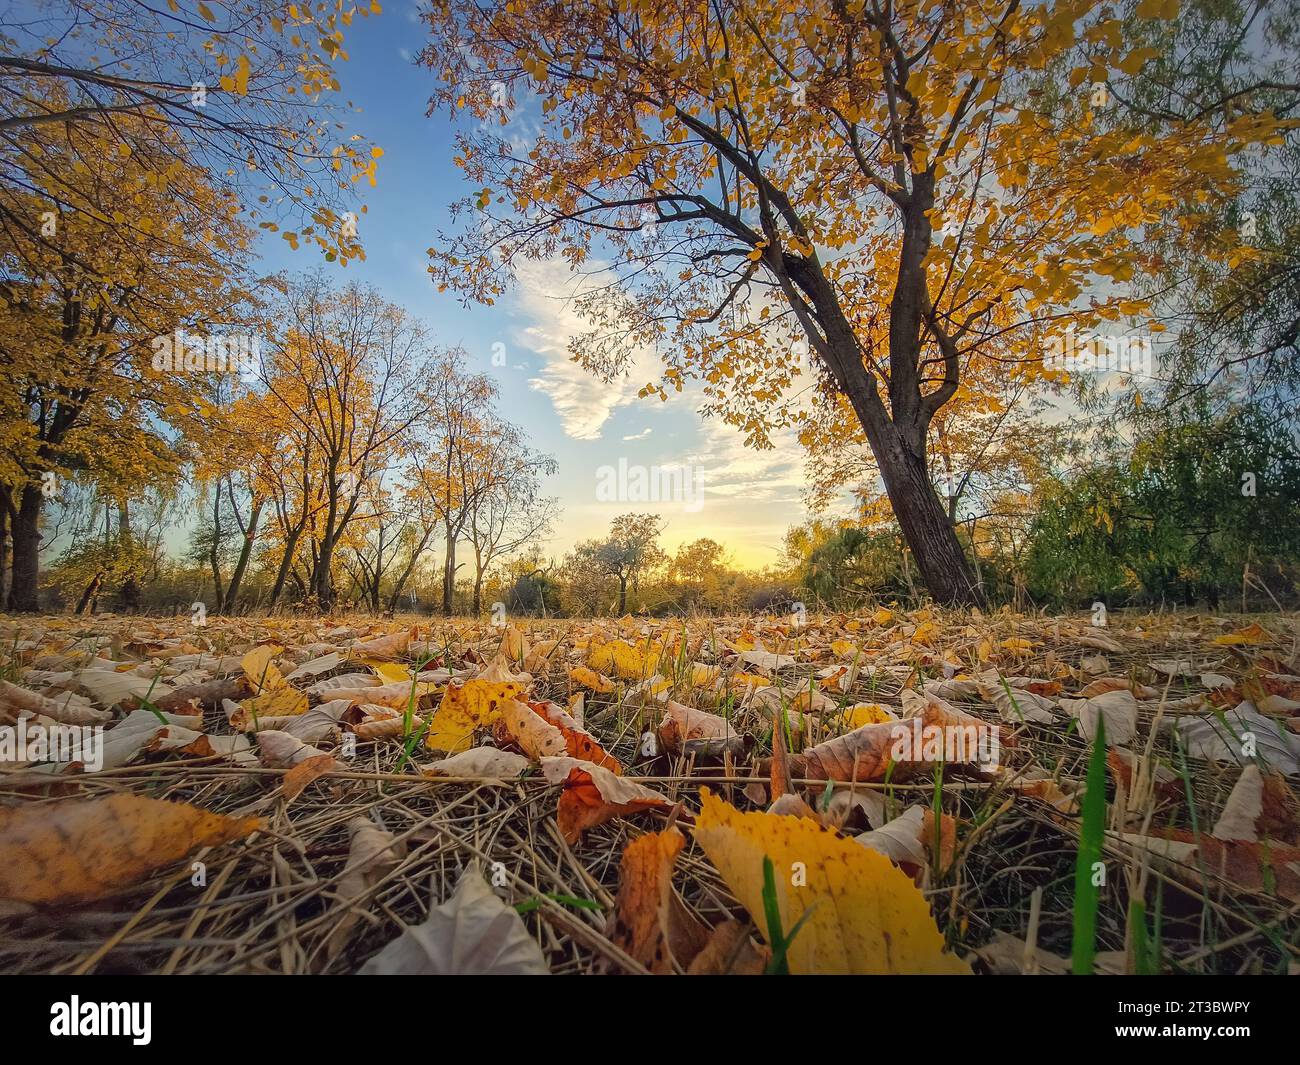 Landschaft der Herbstsaison mit bunten Bäumen und gelbem Laub auf dem Boden. Ruhiger Blick auf den Sonnenuntergang, oktoberlandschaft in der Nähe des Waldes Stockfoto